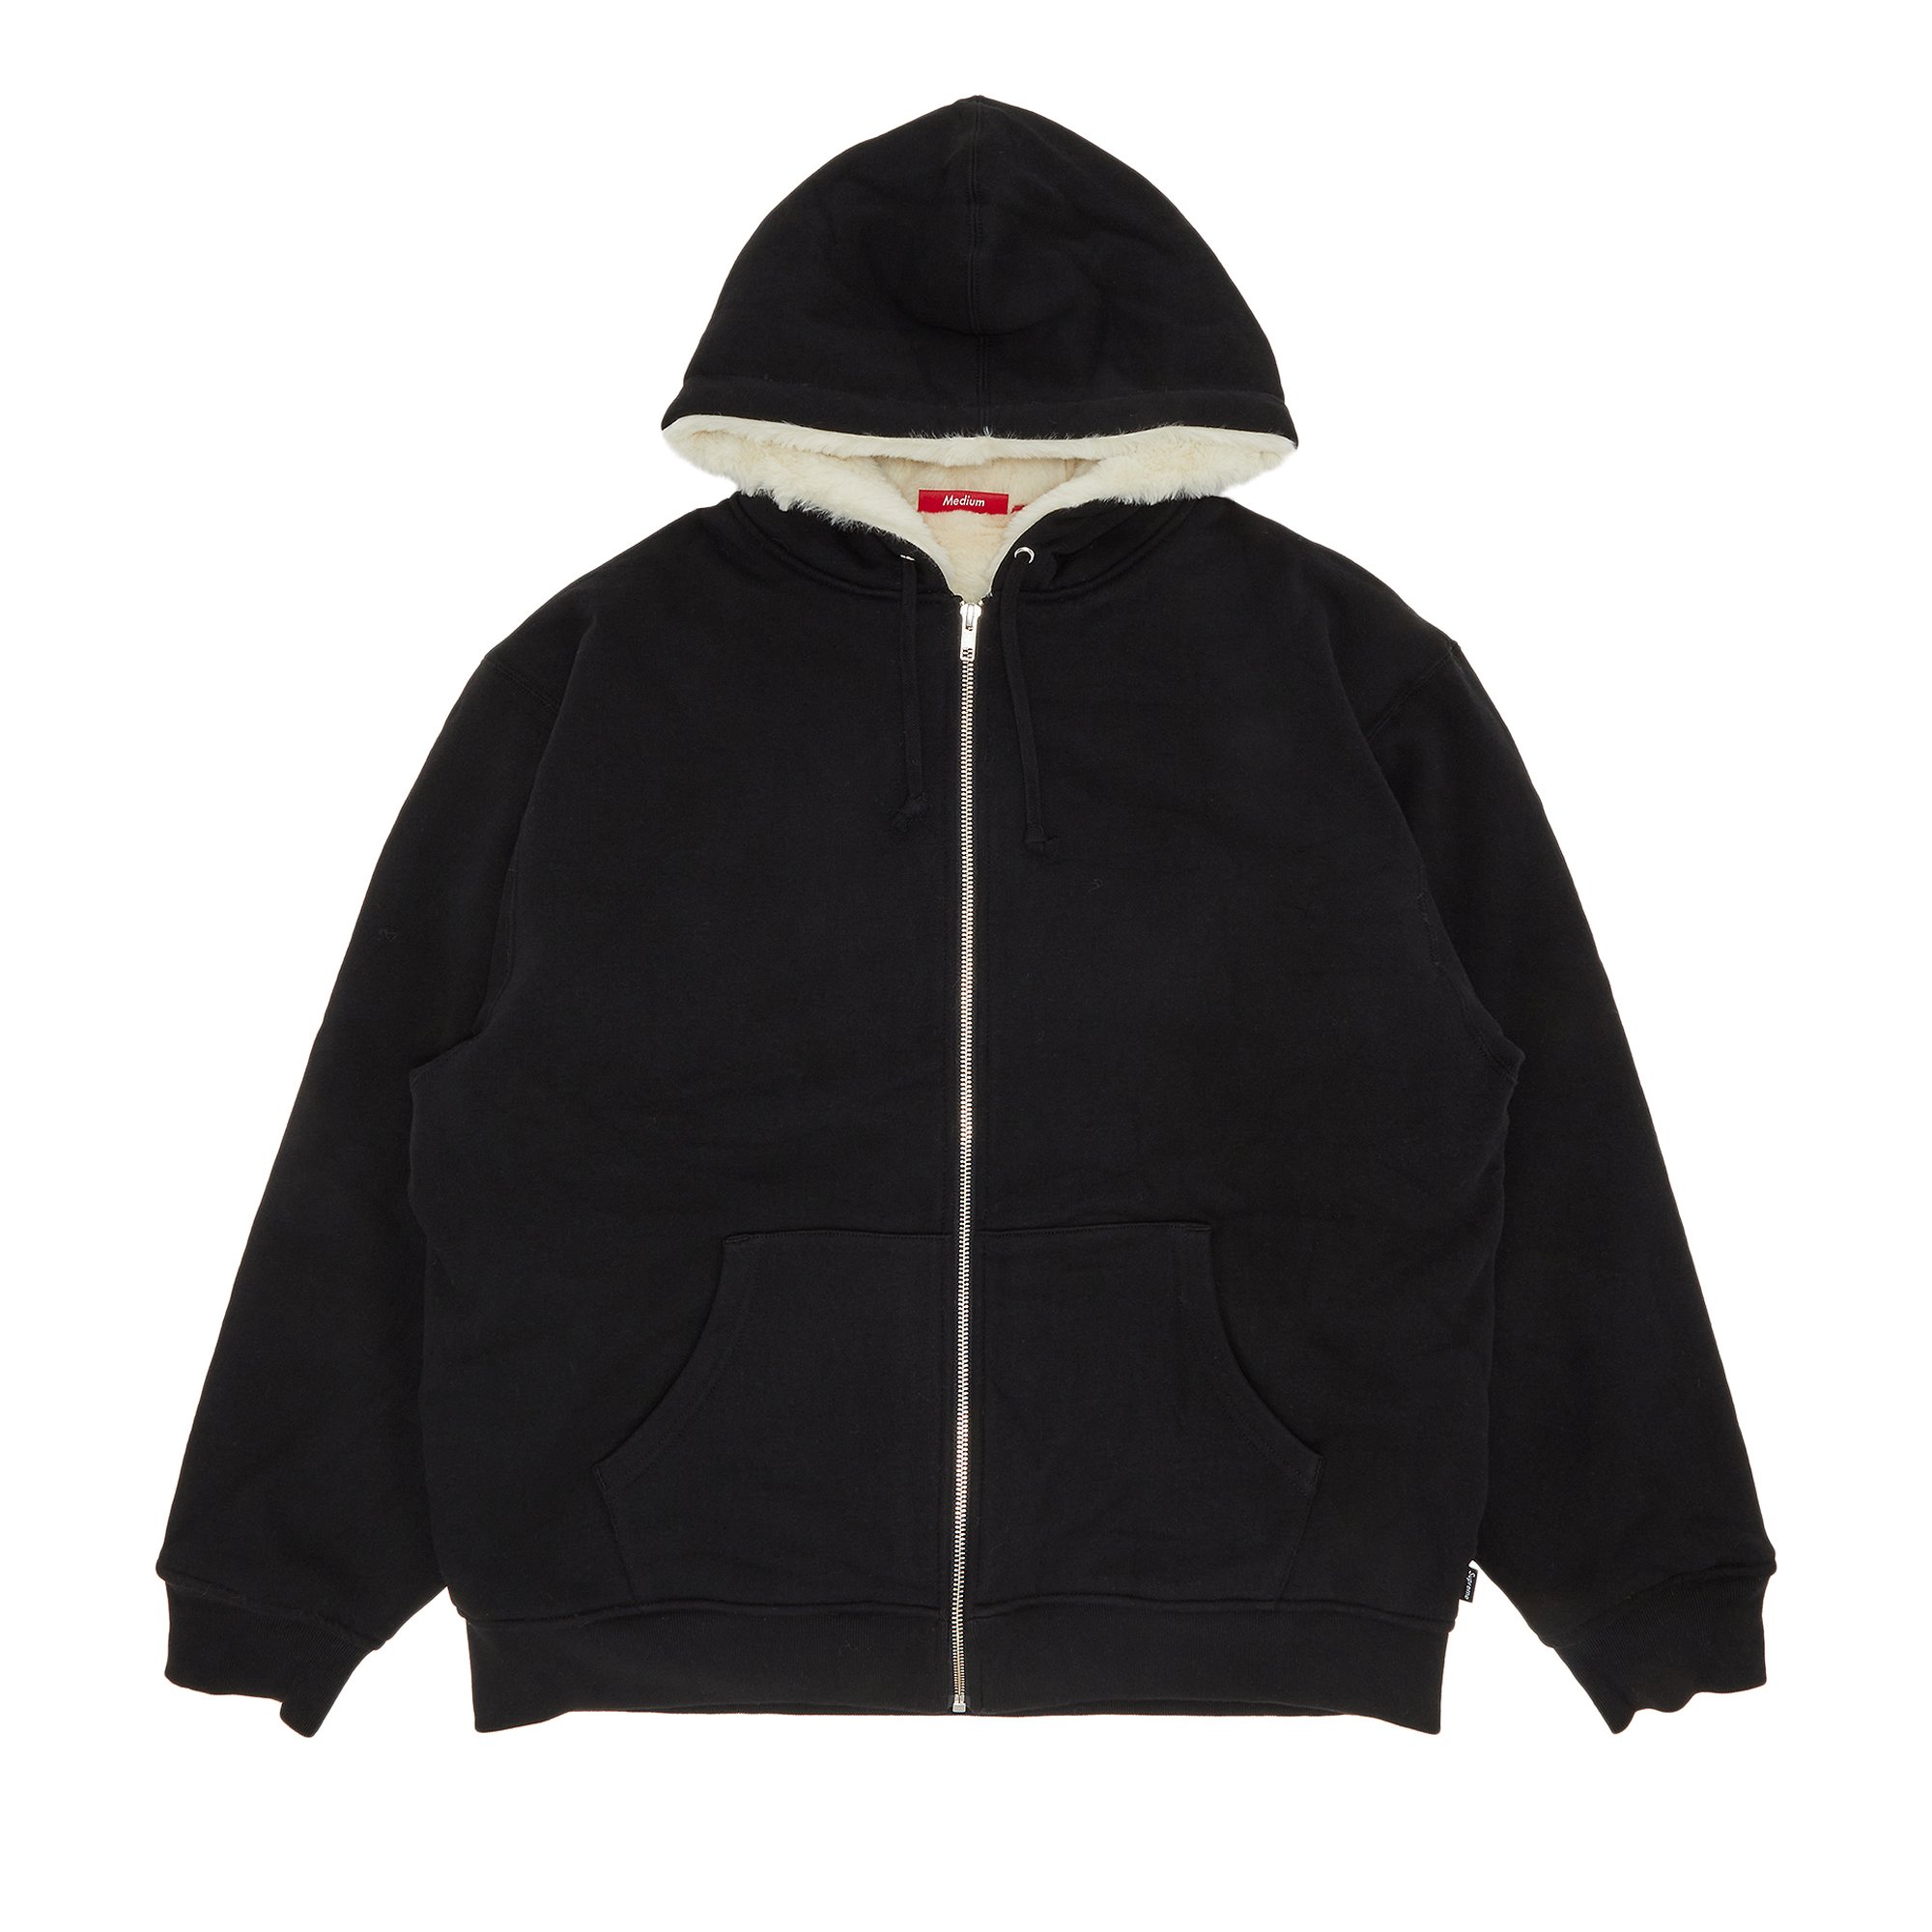 Supreme Faux Fur Lined Zip Up Hooded Sweatshirt 'Black'